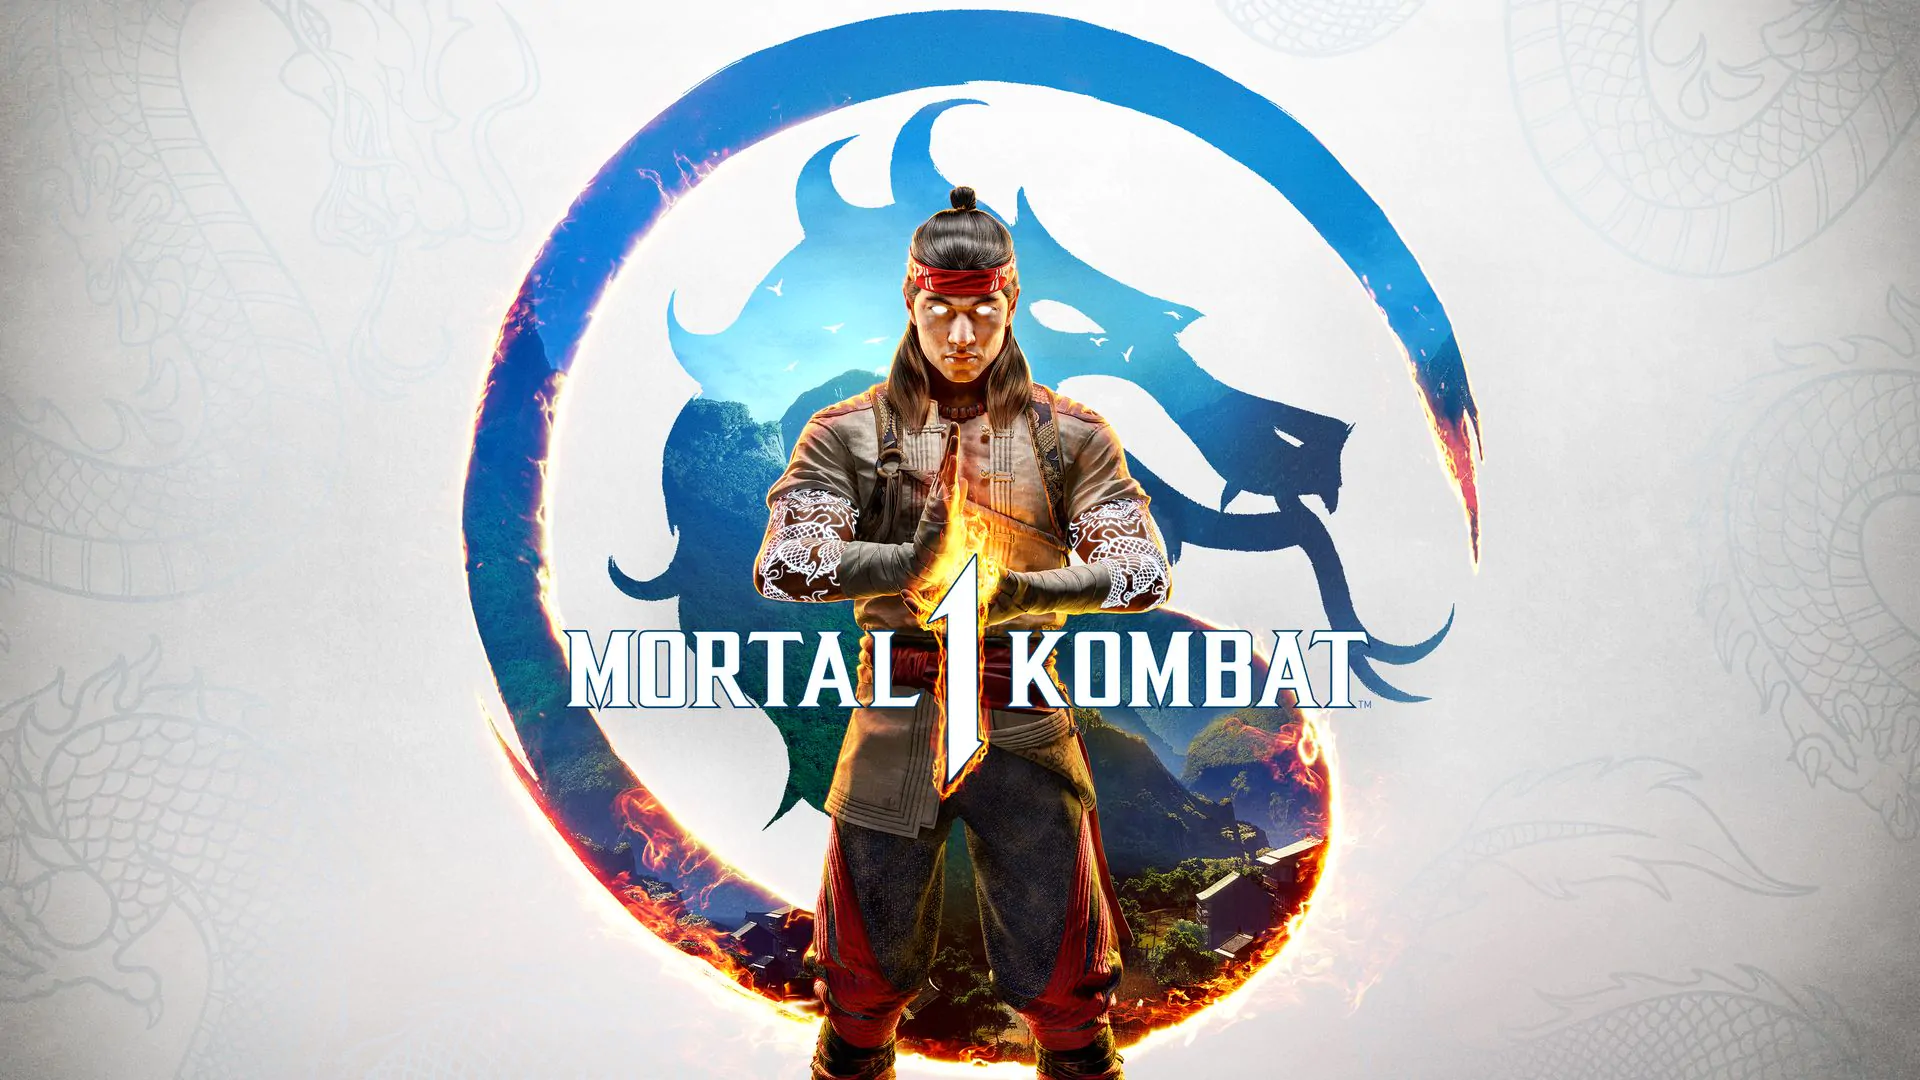 Mortal Kombat 1, la recensione: il ritorno della grande K videoludica!